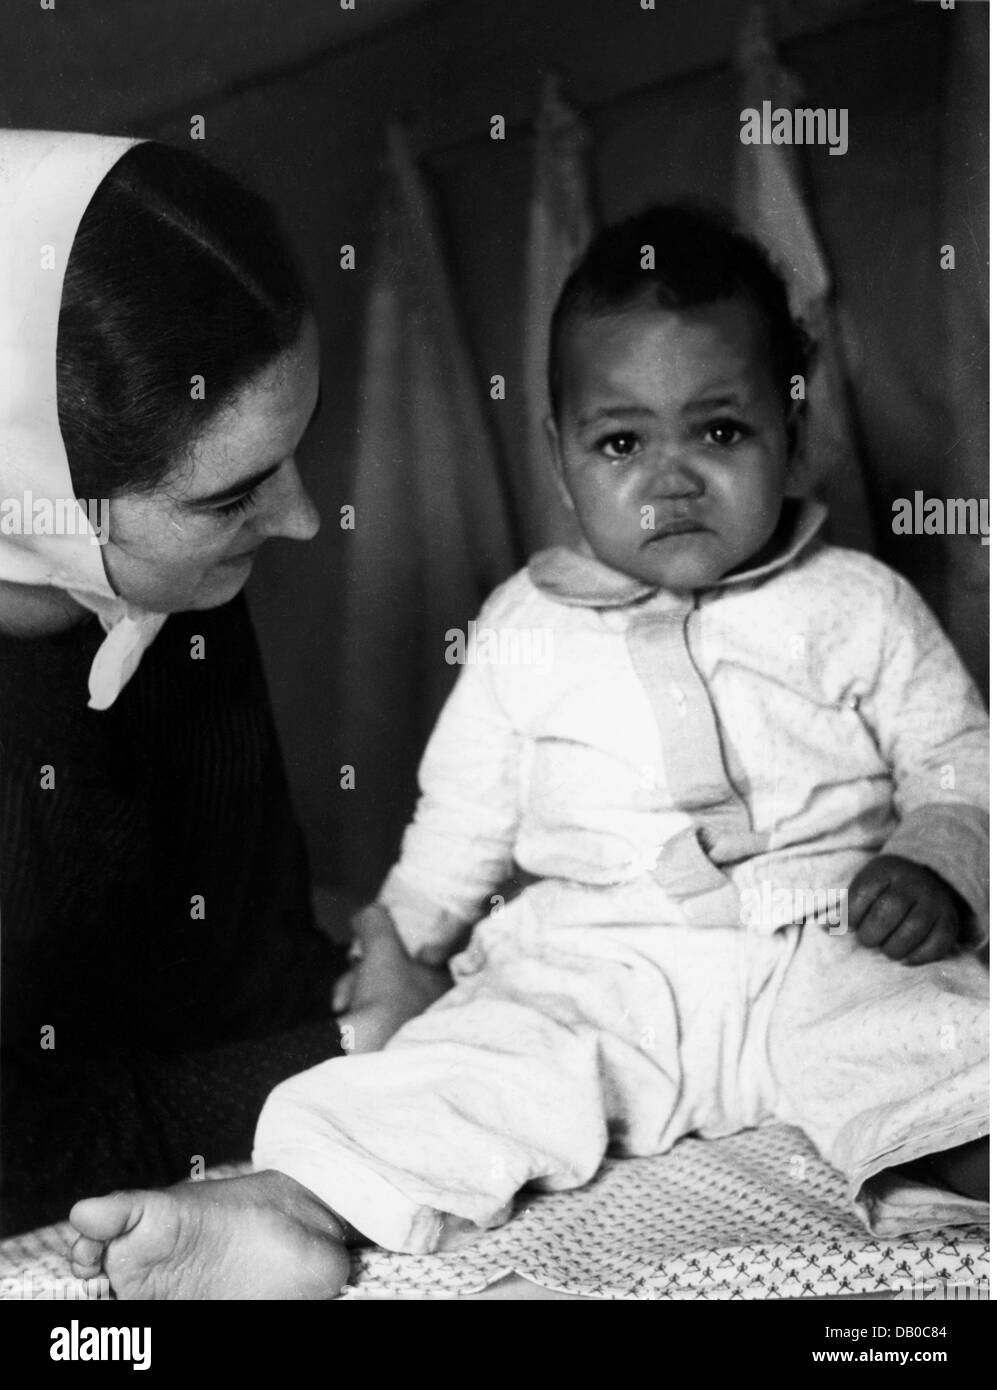 Période d'après-guerre, gens, Allemagne, enfants de guerre, bébé dans un foyer pour enfants, début des années 1950, droits additionnels-Clearences-non disponible Banque D'Images